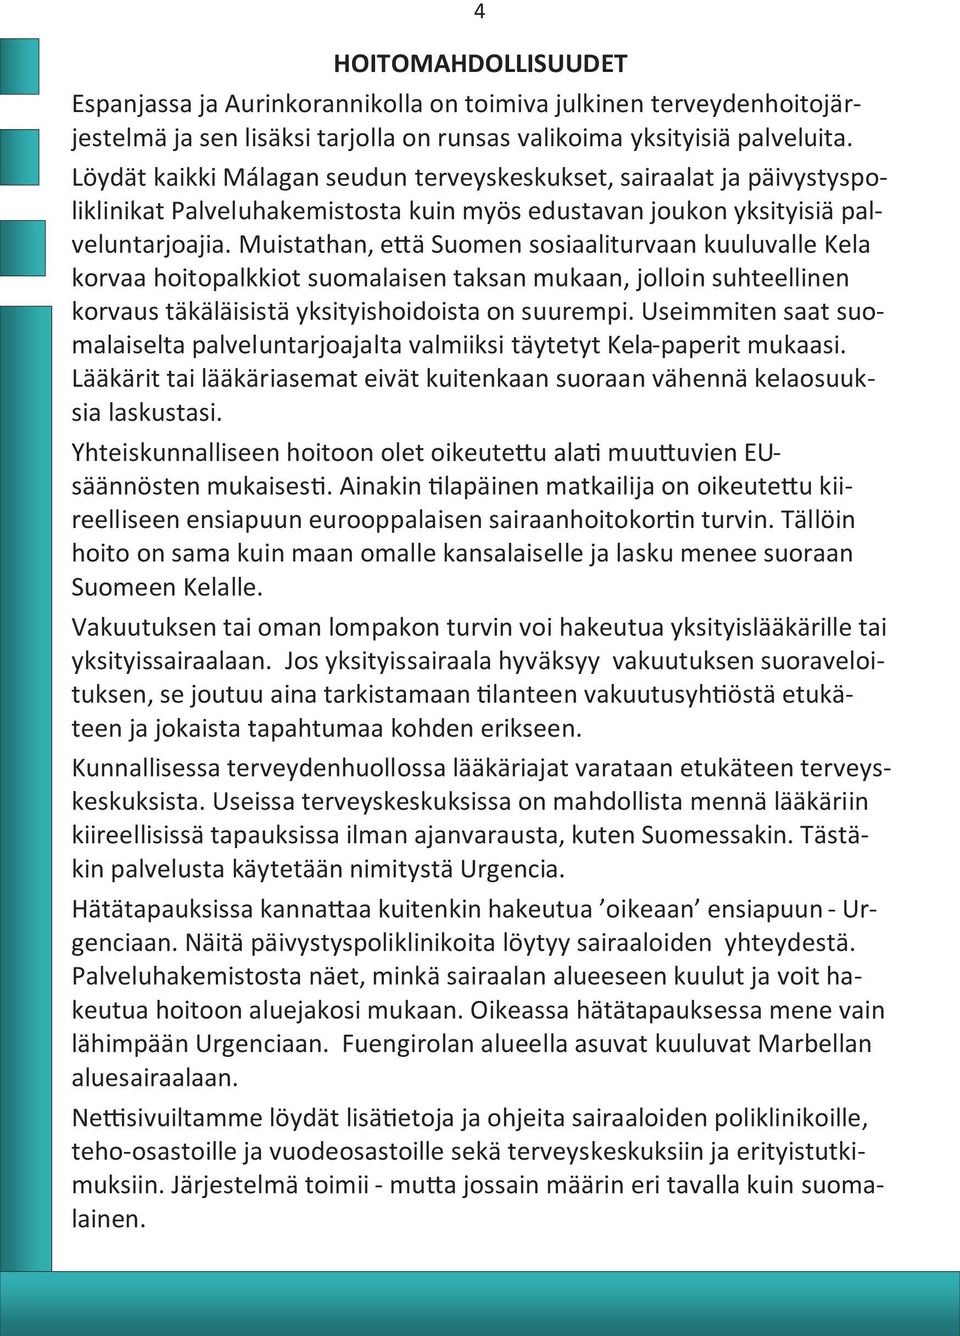 Muistathan, että Suomen sosiaaliturvaan kuuluvalle Kela korvaa hoitopalkkiot suomalaisen taksan mukaan, jolloin suhteellinen korvaus täkäläisistä yksityishoidoista on suurempi.